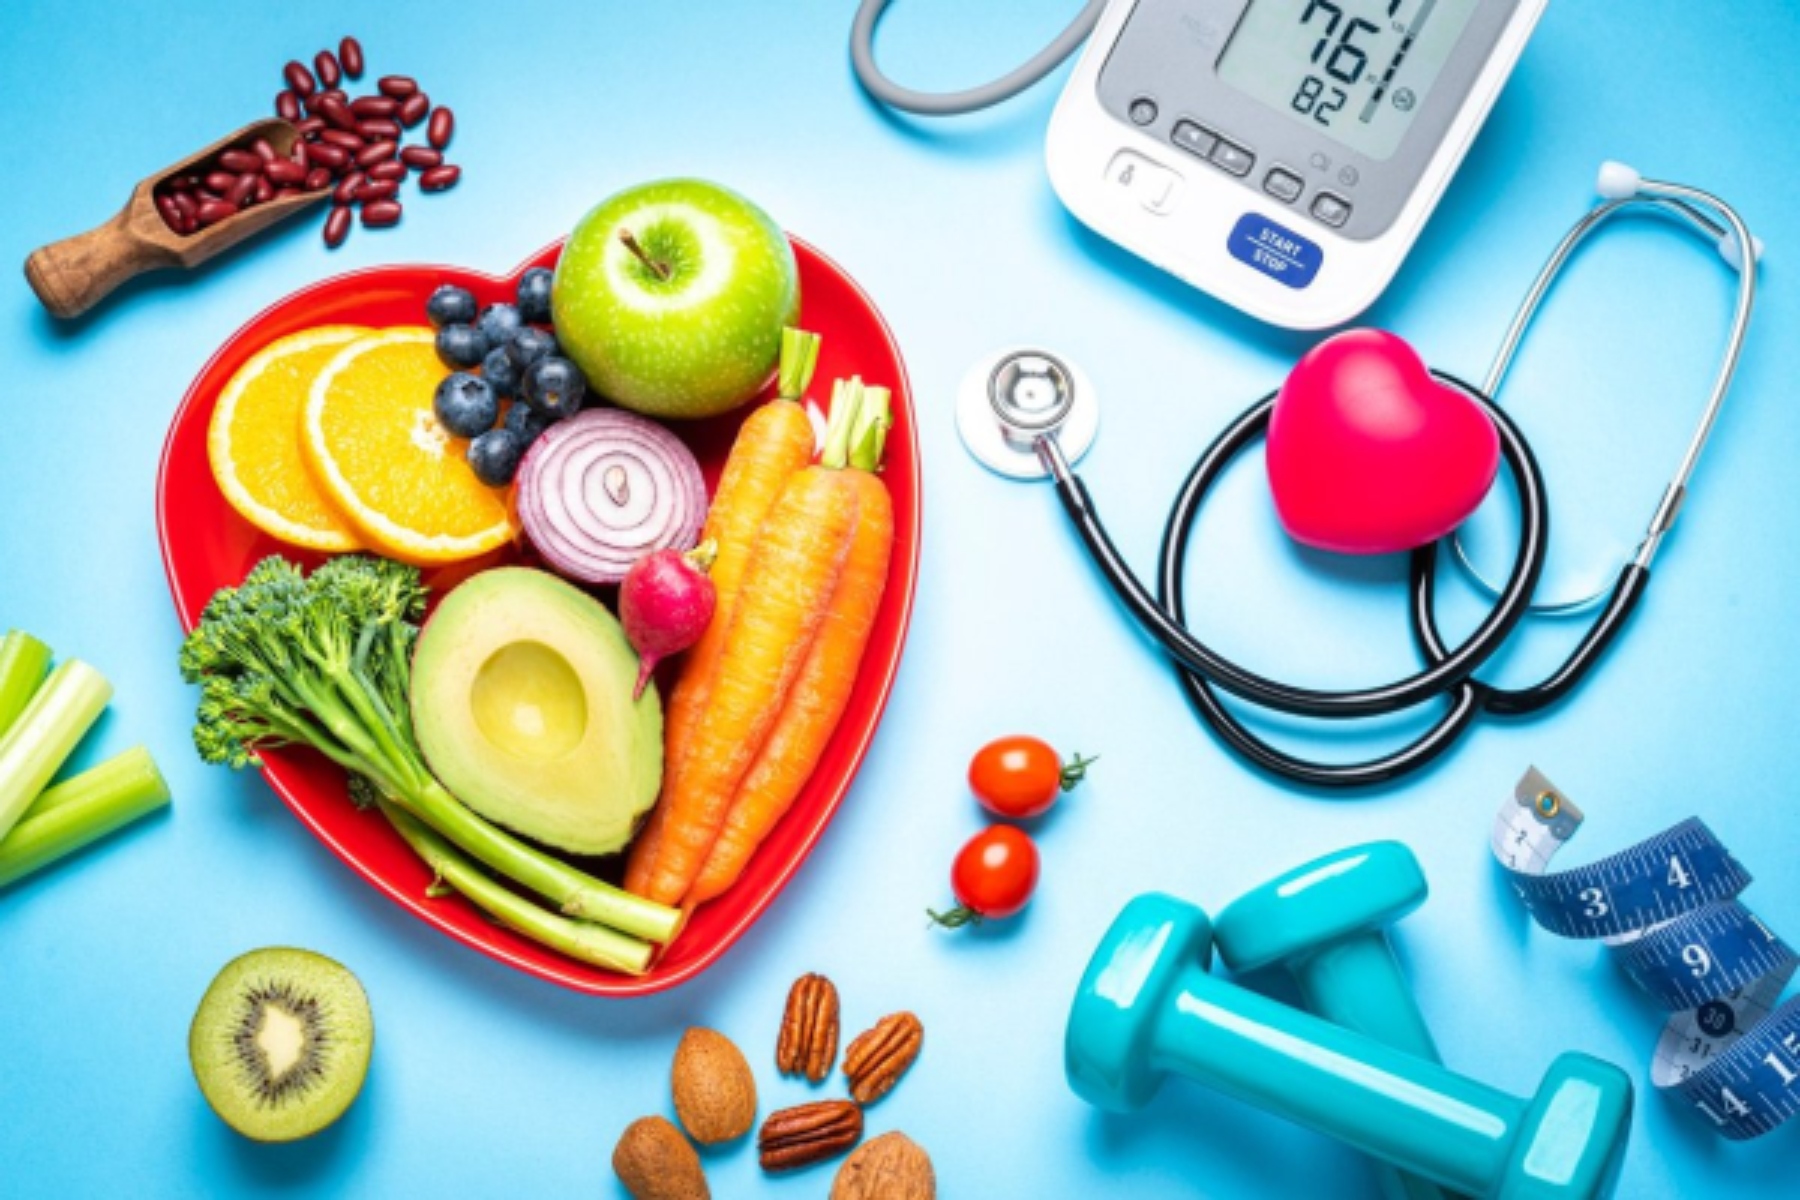 Υψηλή χοληστερόλη: Ποιες τροφές πρέπει να περιορίσετε για υγιή καρδιά;